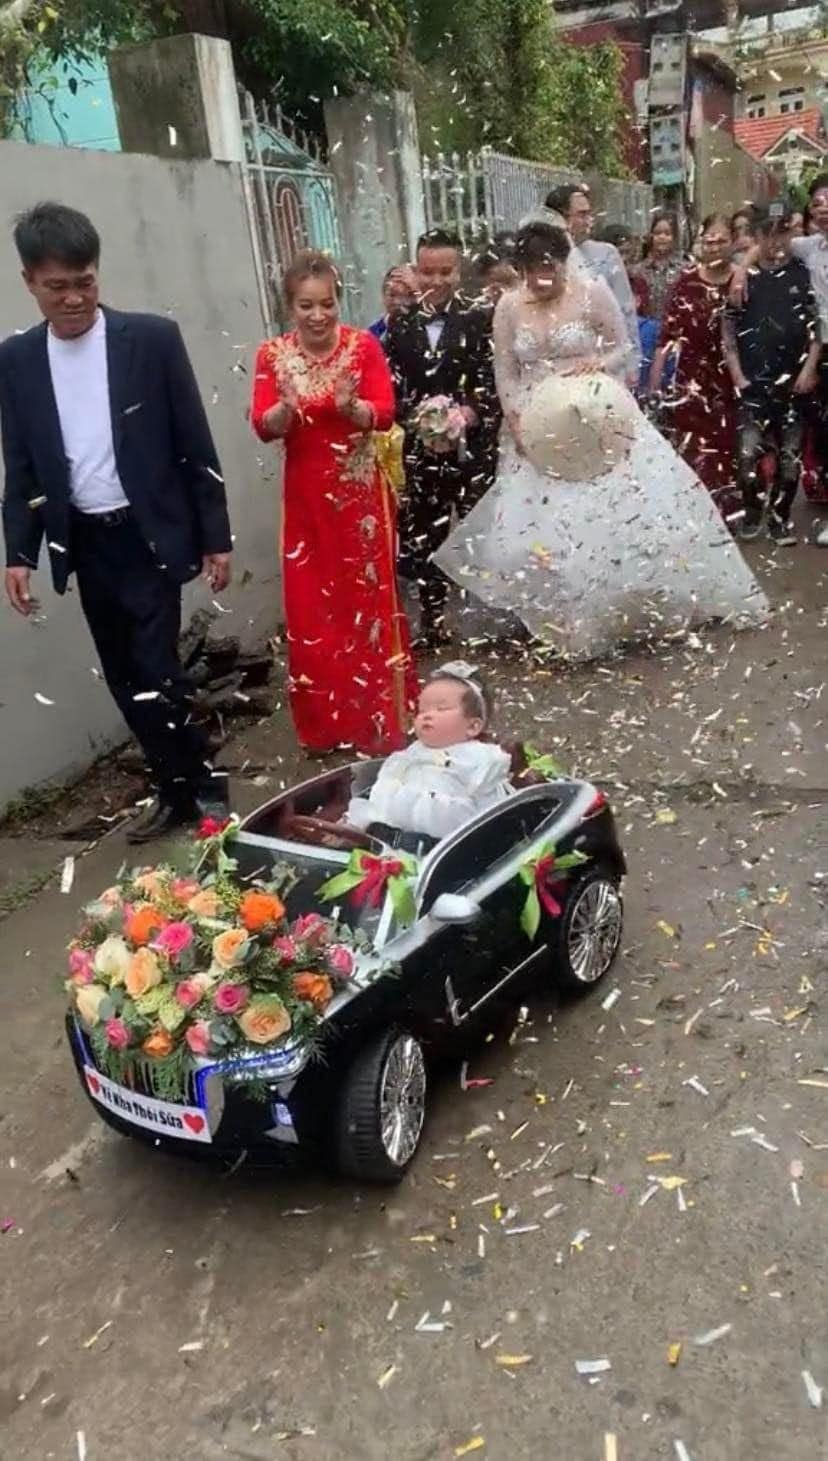 Thêm một thế lực nhí chiếm sóng hôn lễ: soái ca 2 tuổi của hậu vệ Tấn Tài, lái xe hoa dẫn bố mẹ vào lễ đường